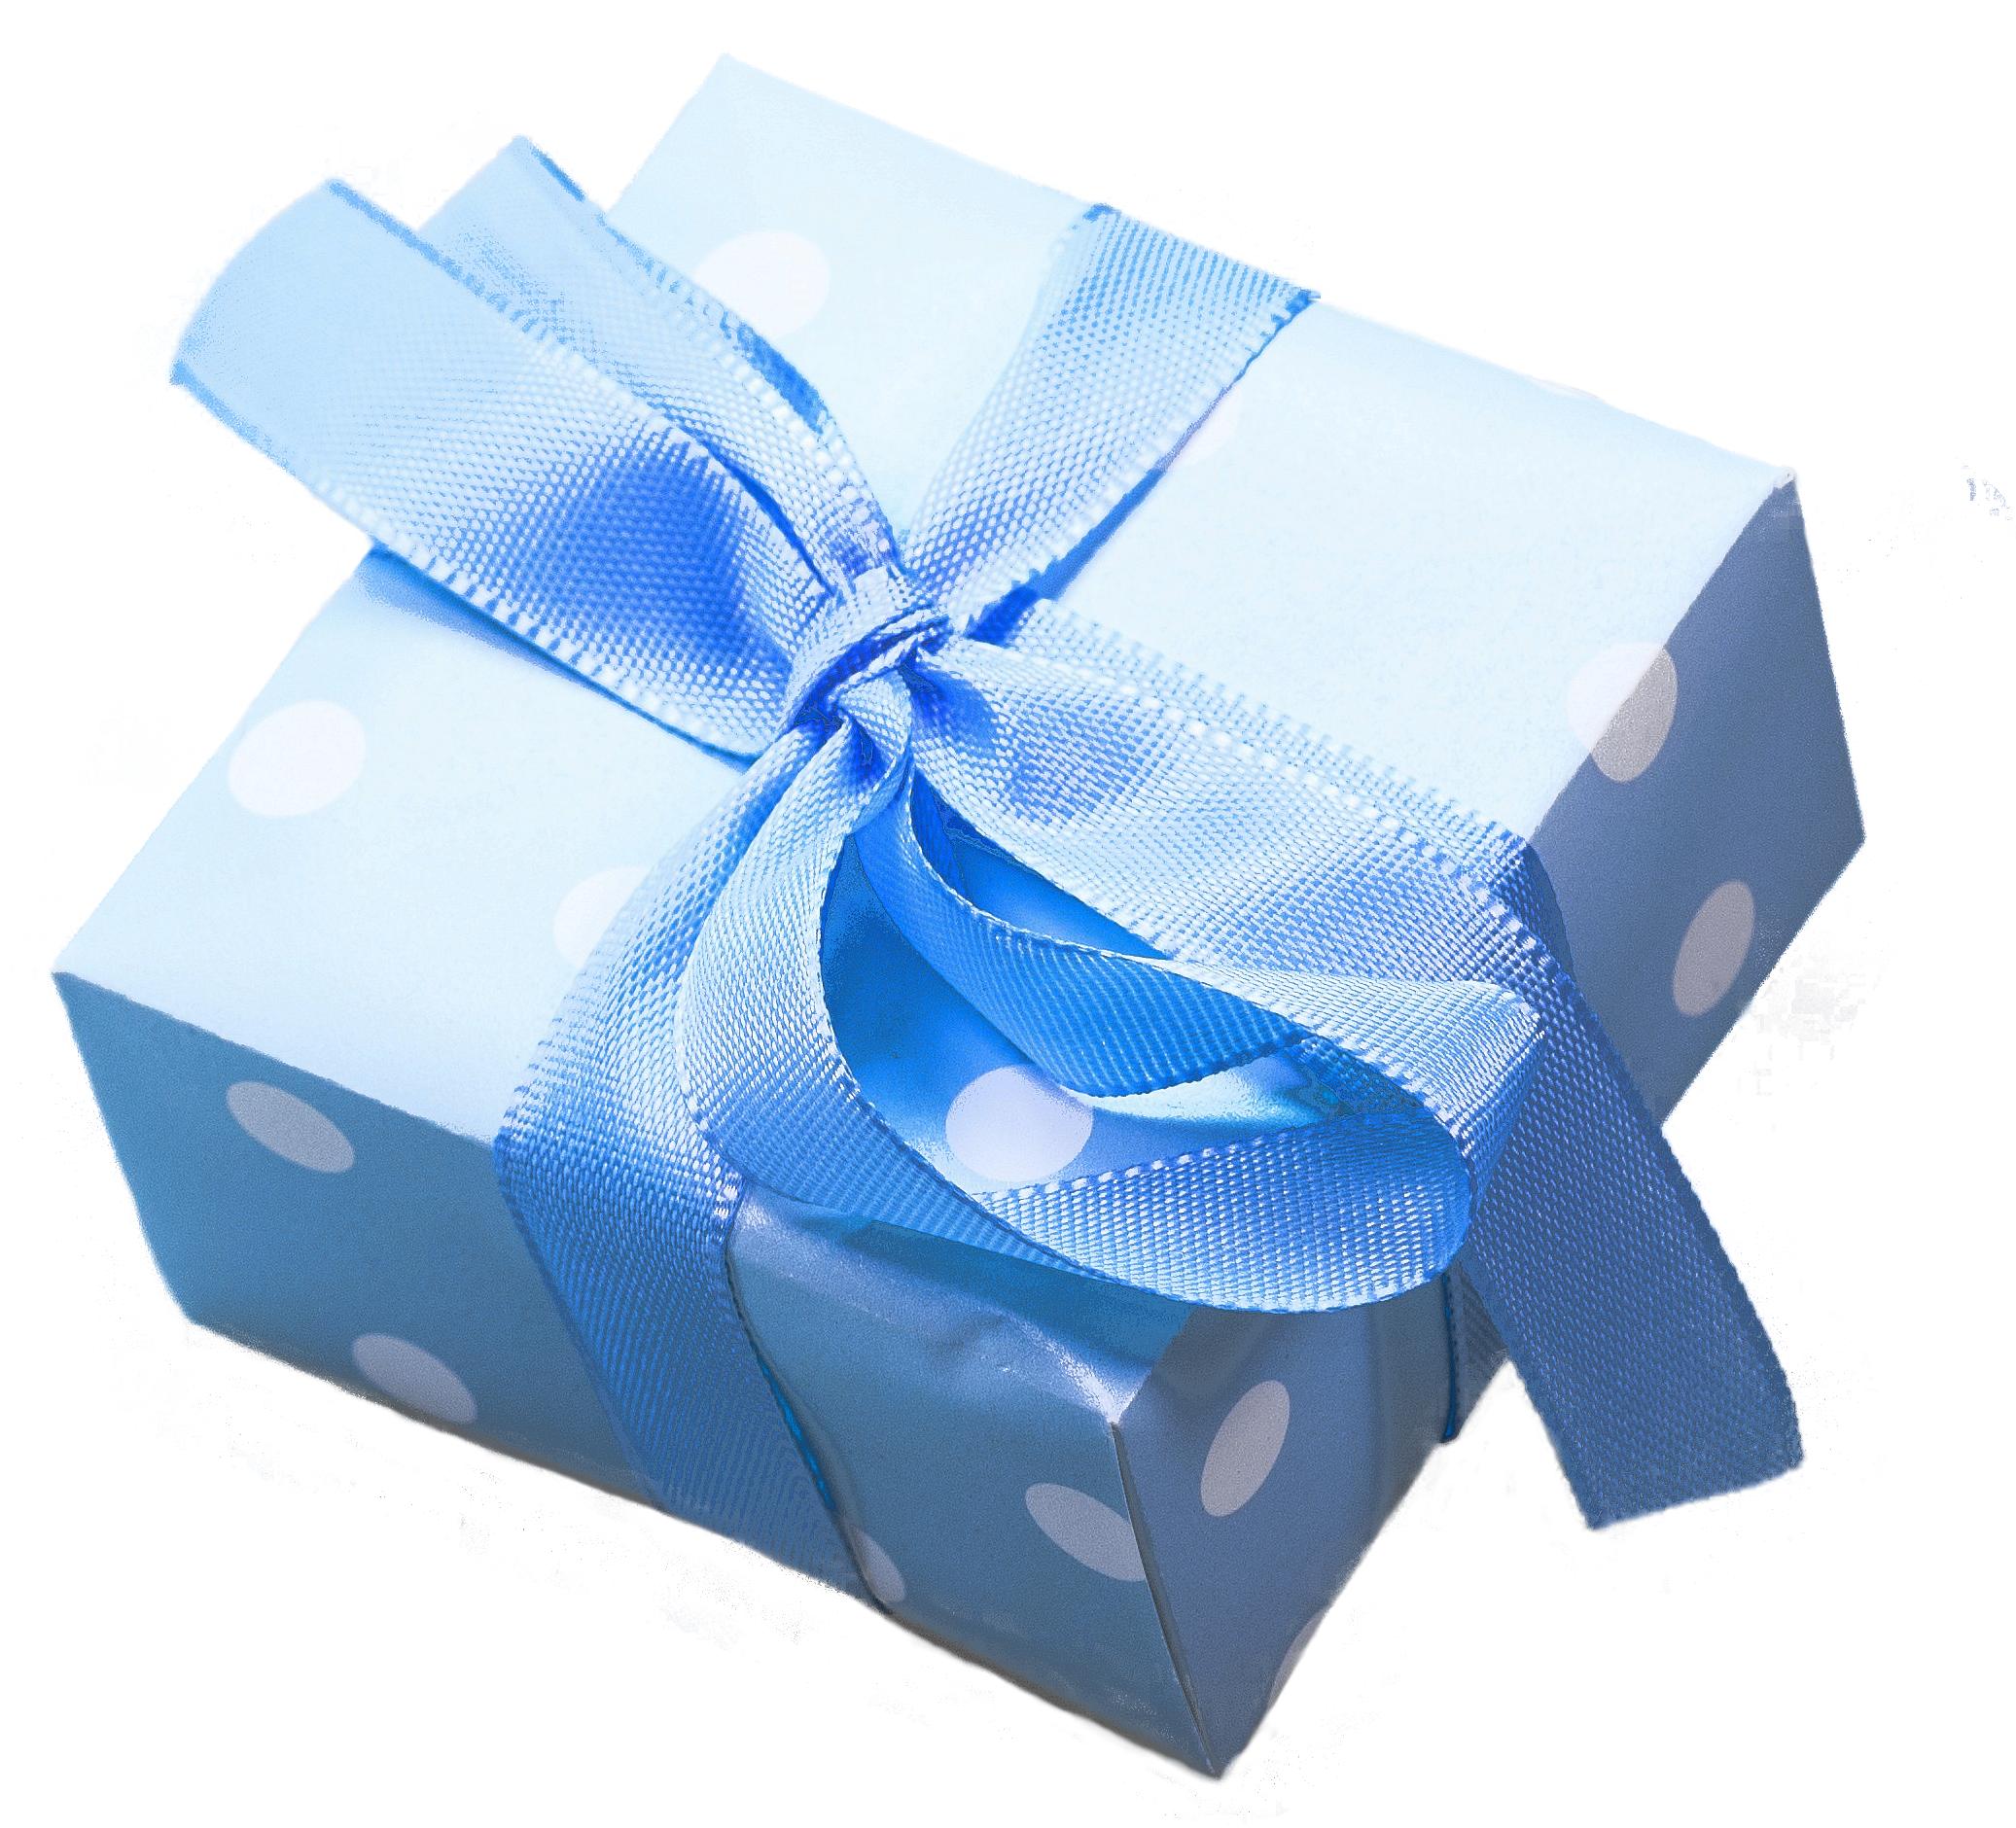 Подарок синий цвет. Подарочные коробки синие. Подарок синий. Синяя подарочная коробка. Коробочка голубой подарок.